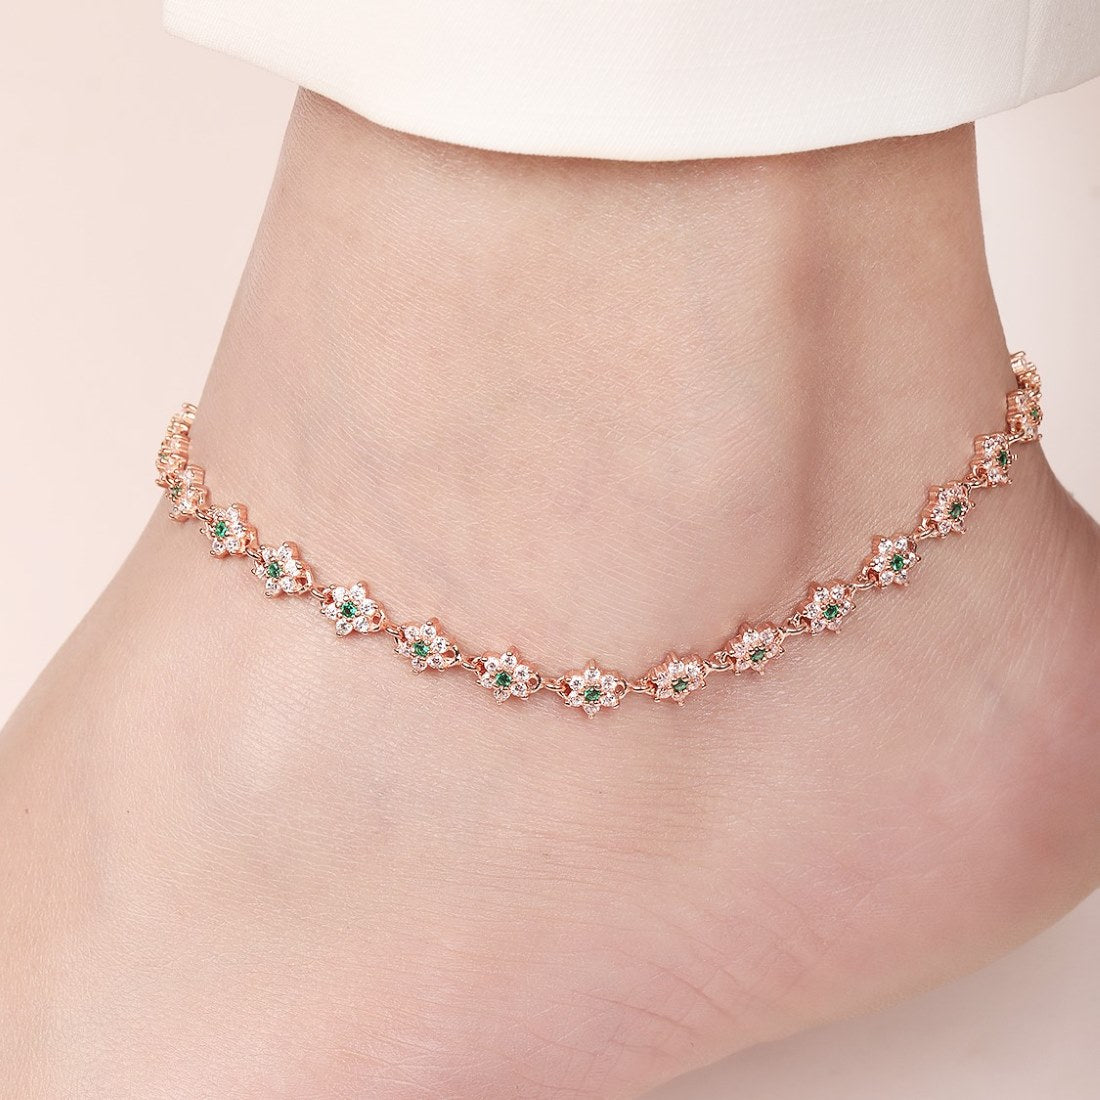 Blooms of Elegance Rose Gold-Plated 925 Sterling Silver Anklet